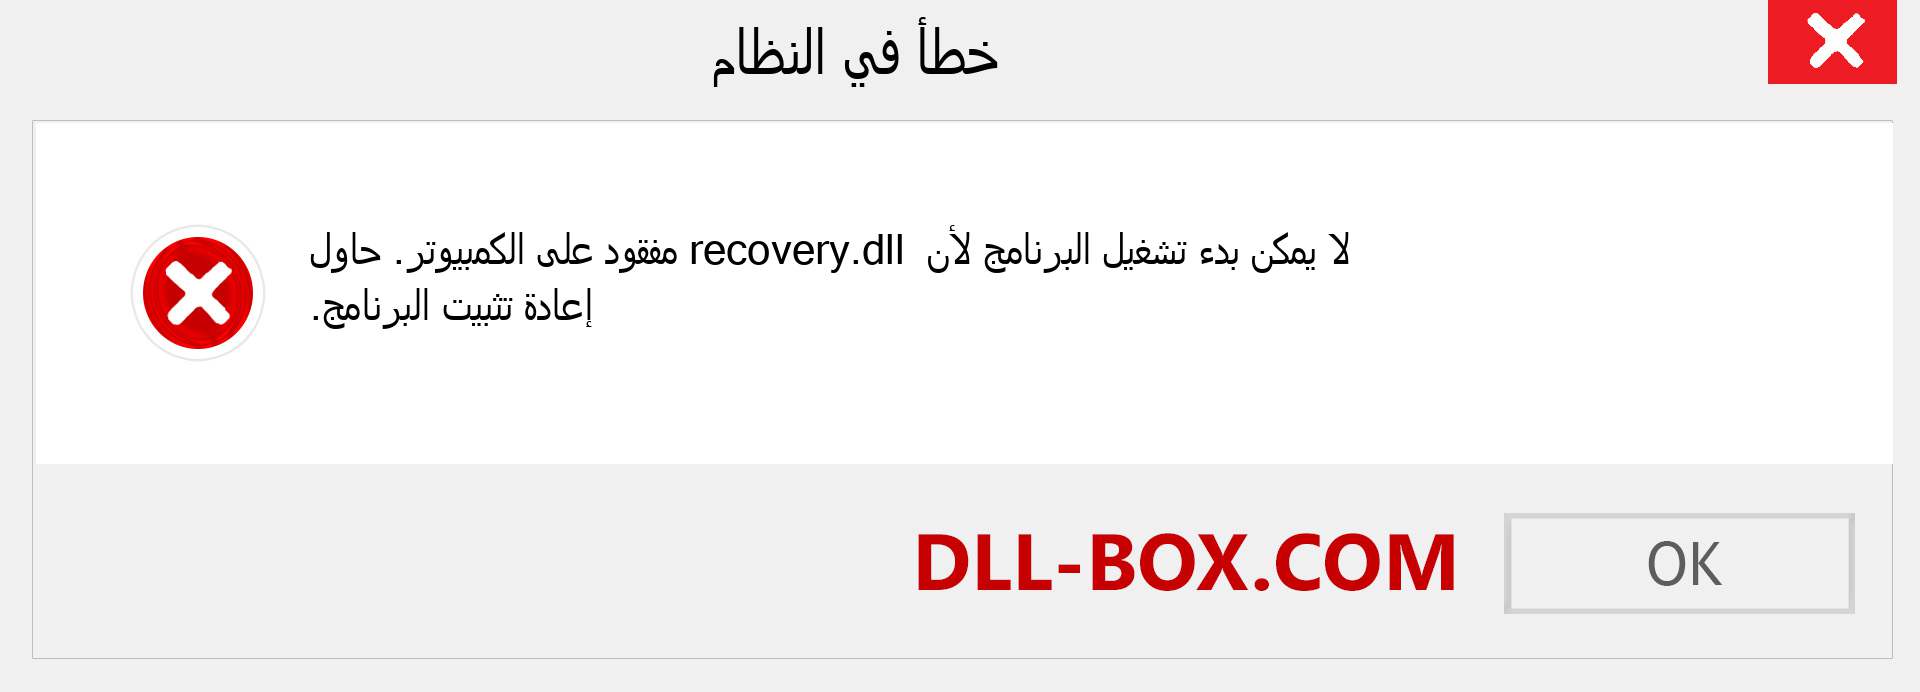 ملف recovery.dll مفقود ؟. التنزيل لنظام التشغيل Windows 7 و 8 و 10 - إصلاح خطأ recovery dll المفقود على Windows والصور والصور